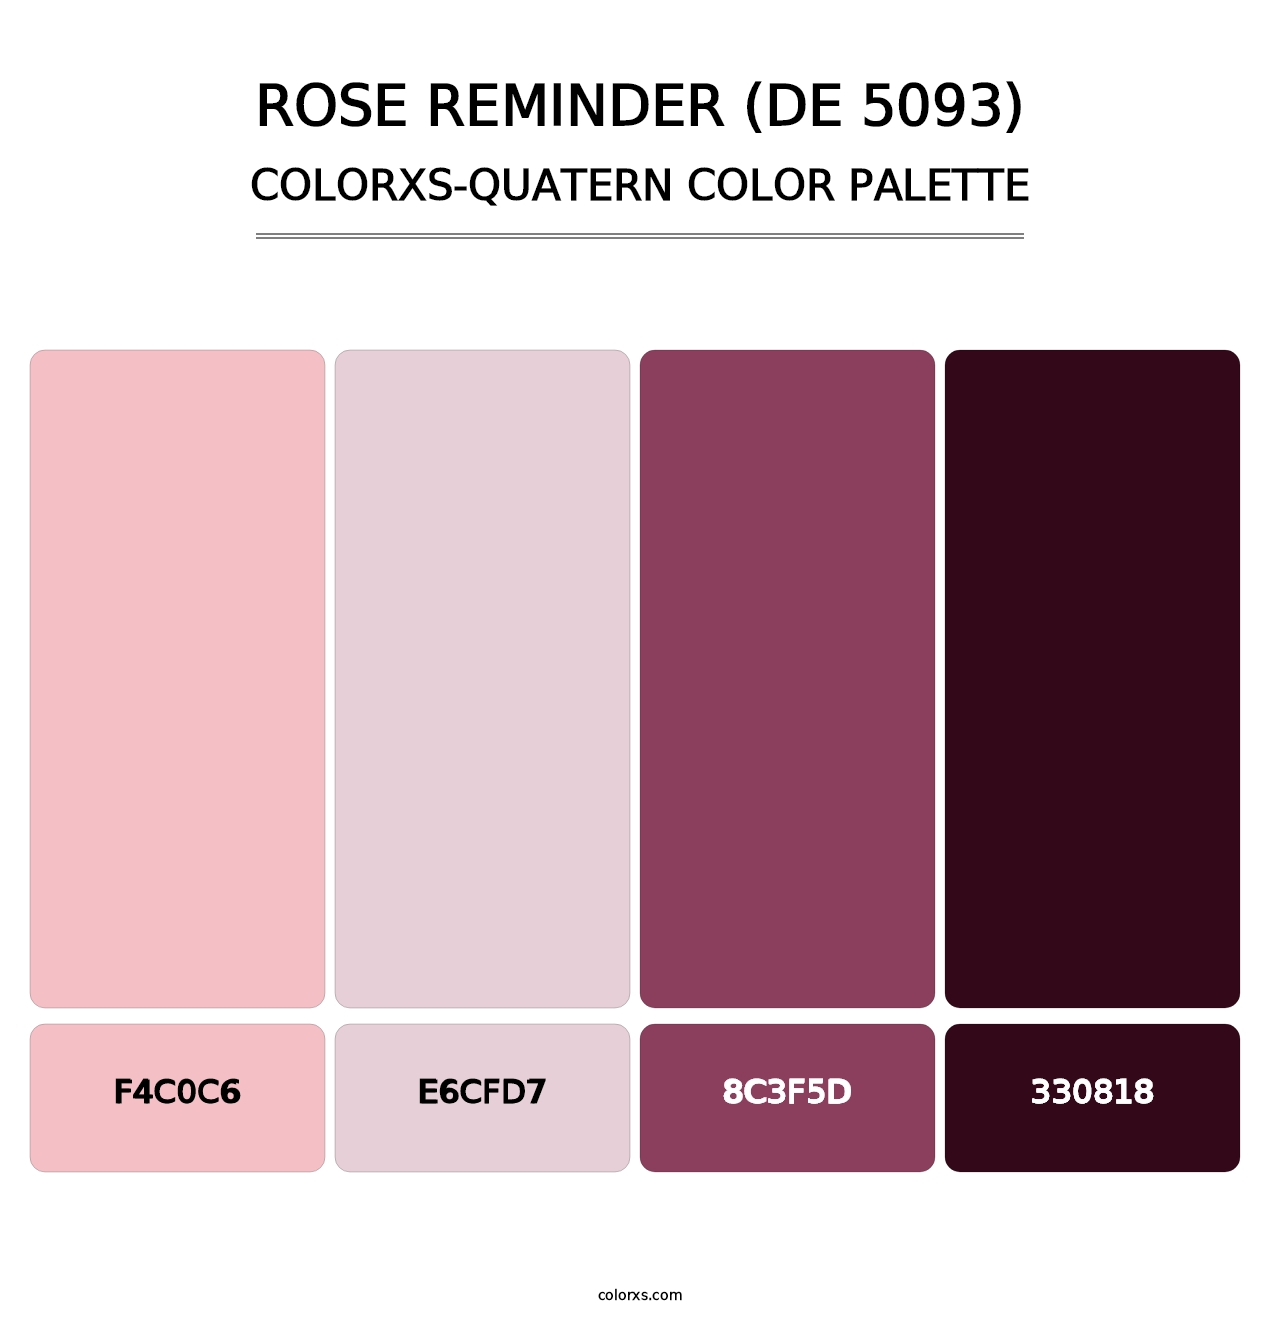 Rose Reminder (DE 5093) - Colorxs Quatern Palette